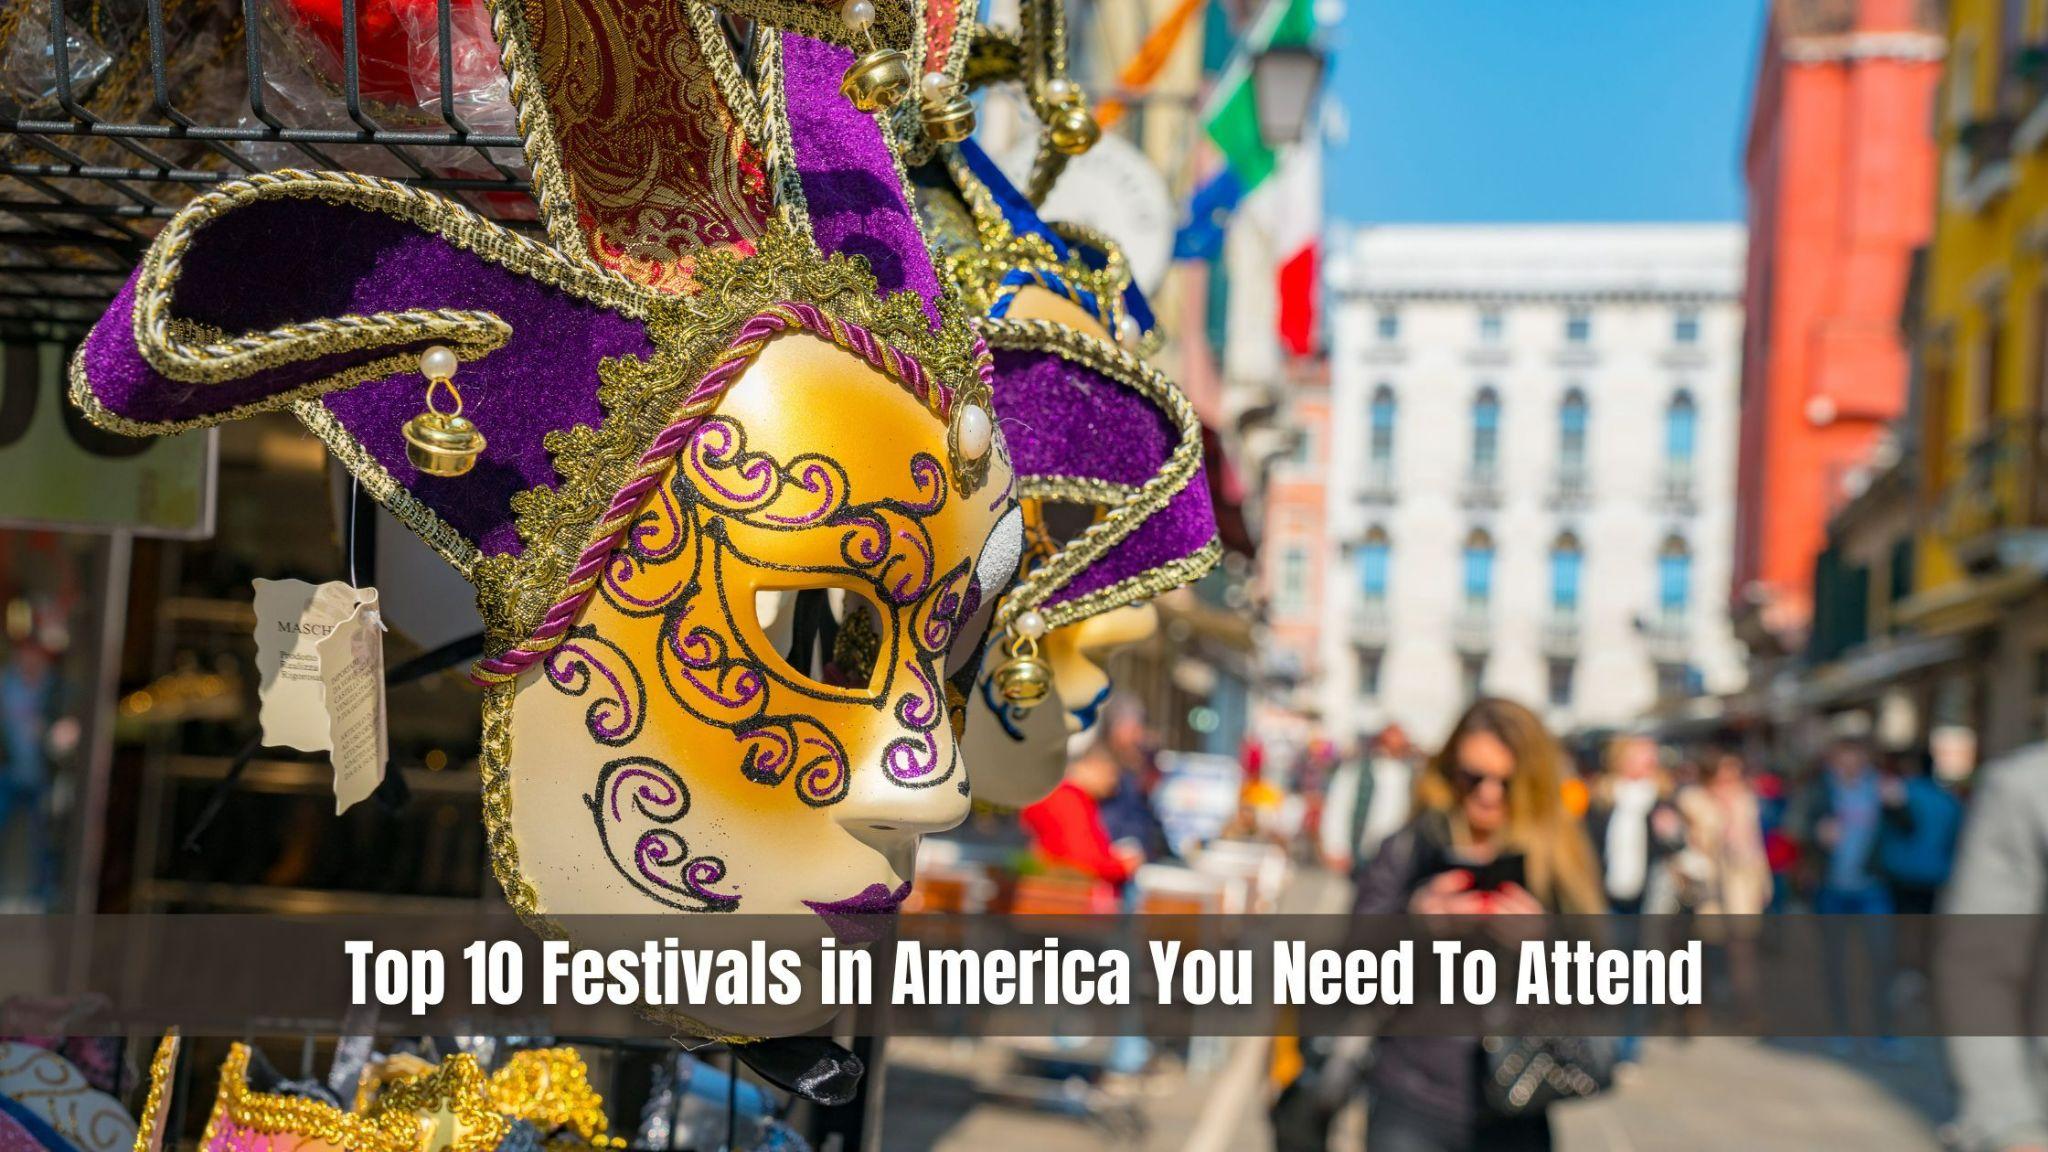 Top 10 Festivals in America